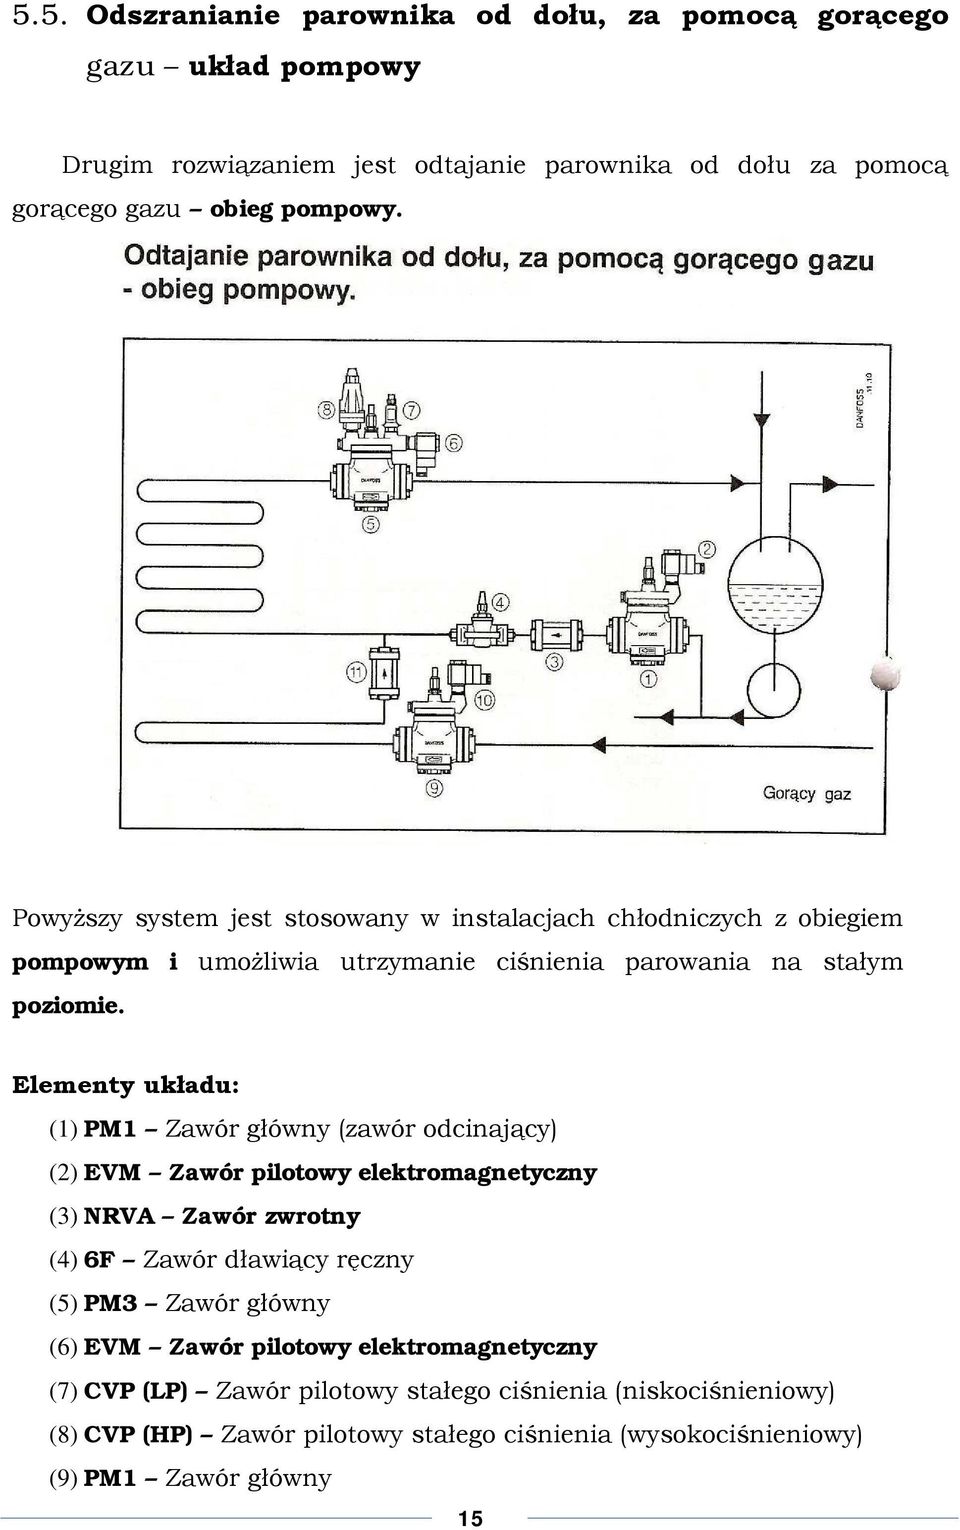 Elementy układu: (1) PM1 Zawór główny (zawór odcinający) (2) EVM Zawór pilotowy elektromagnetyczny (3) NRVA Zawór zwrotny (4) 6F Zawór dławiący ręczny (5) PM3 Zawór